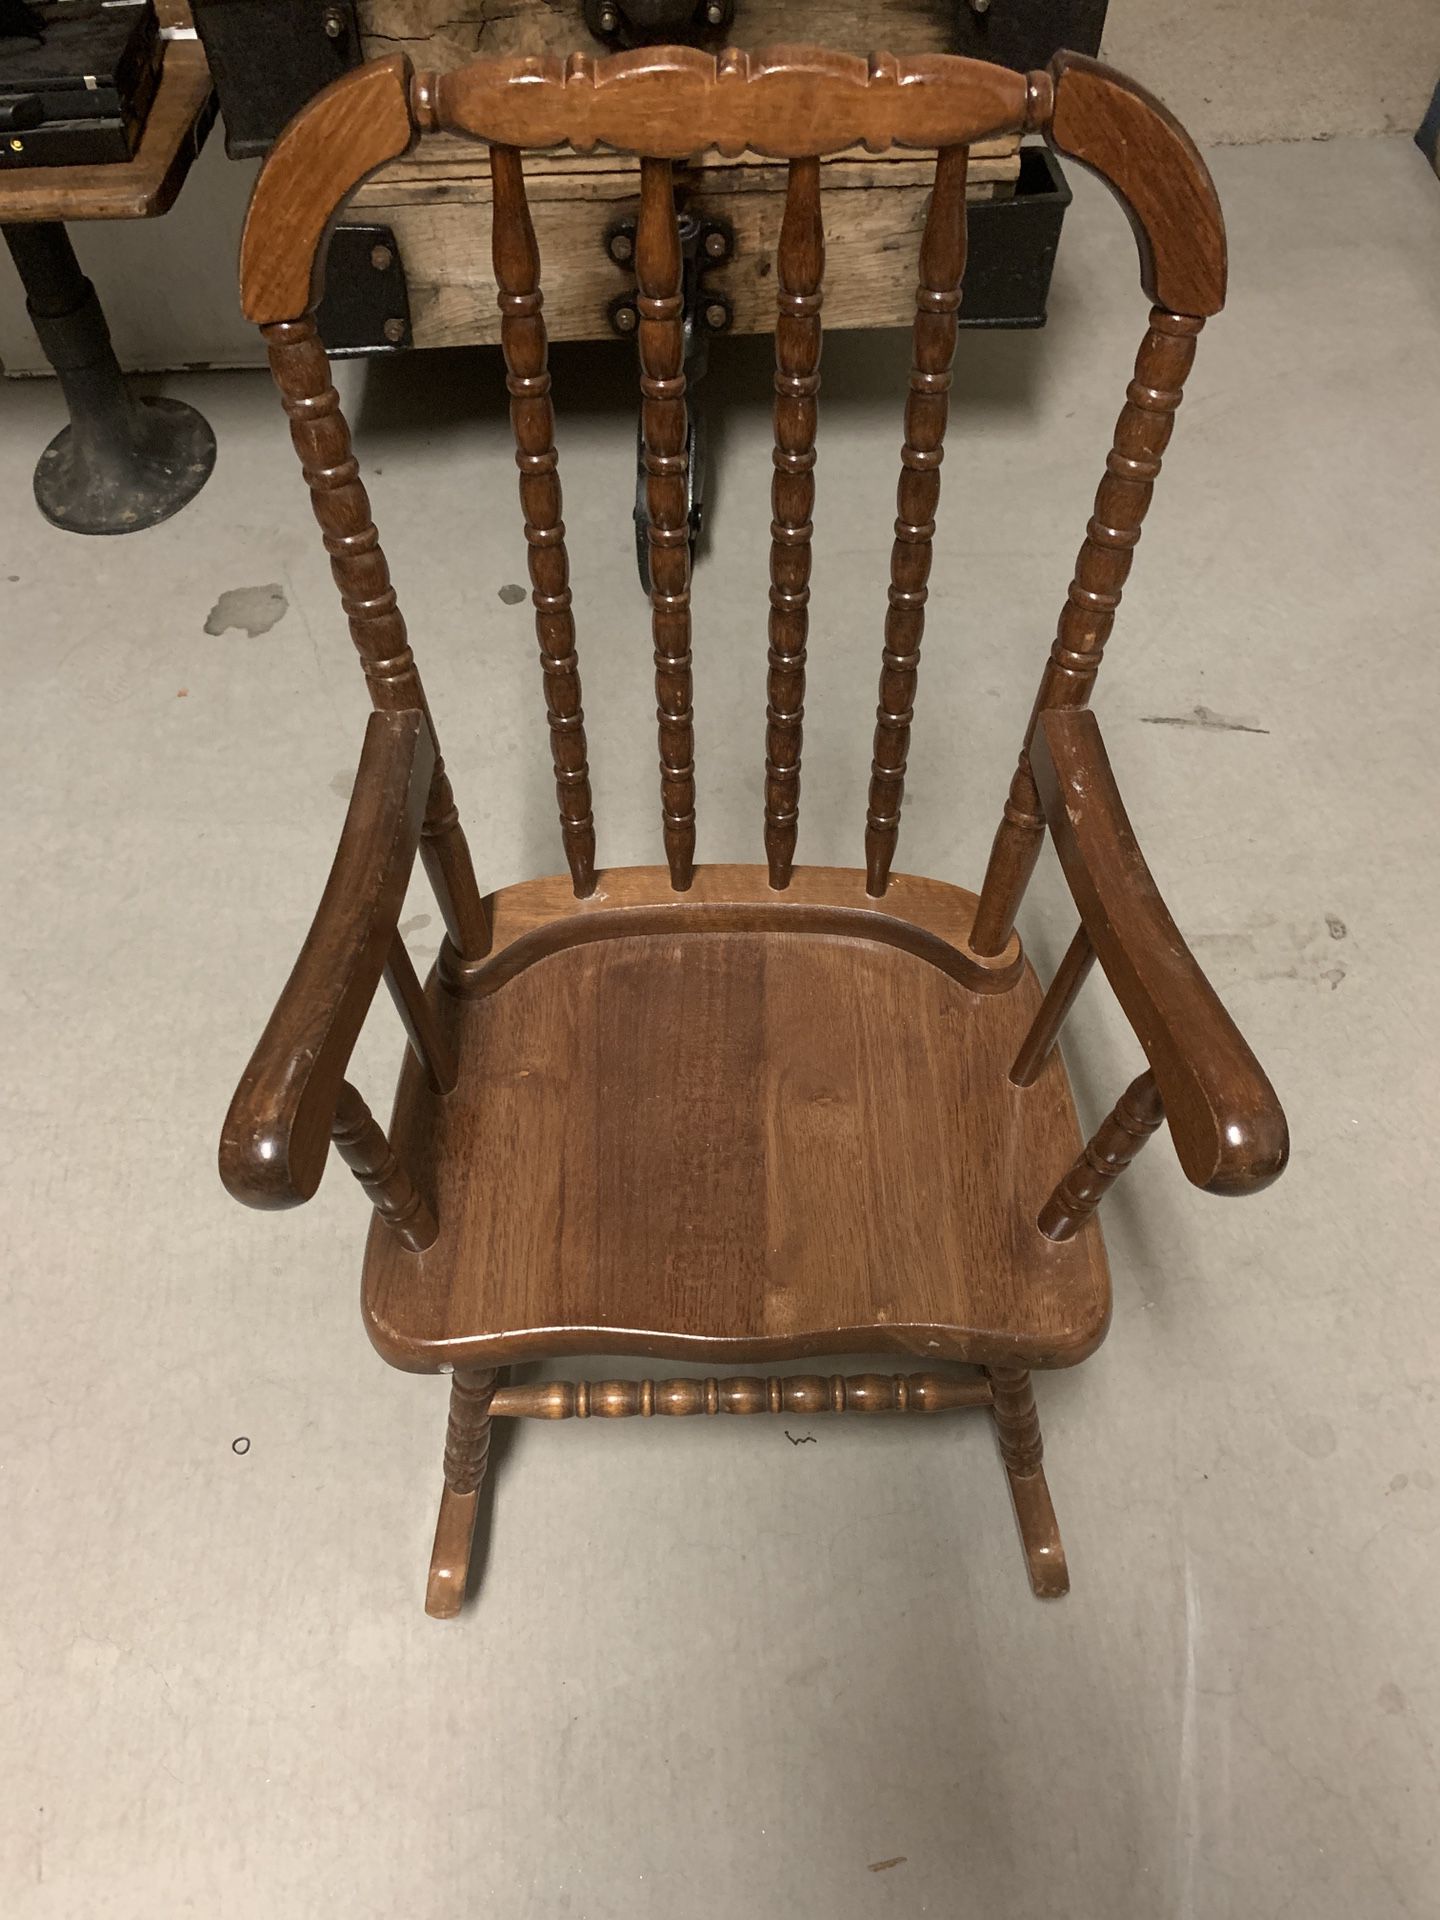 Antique Child’s Rocking Chair